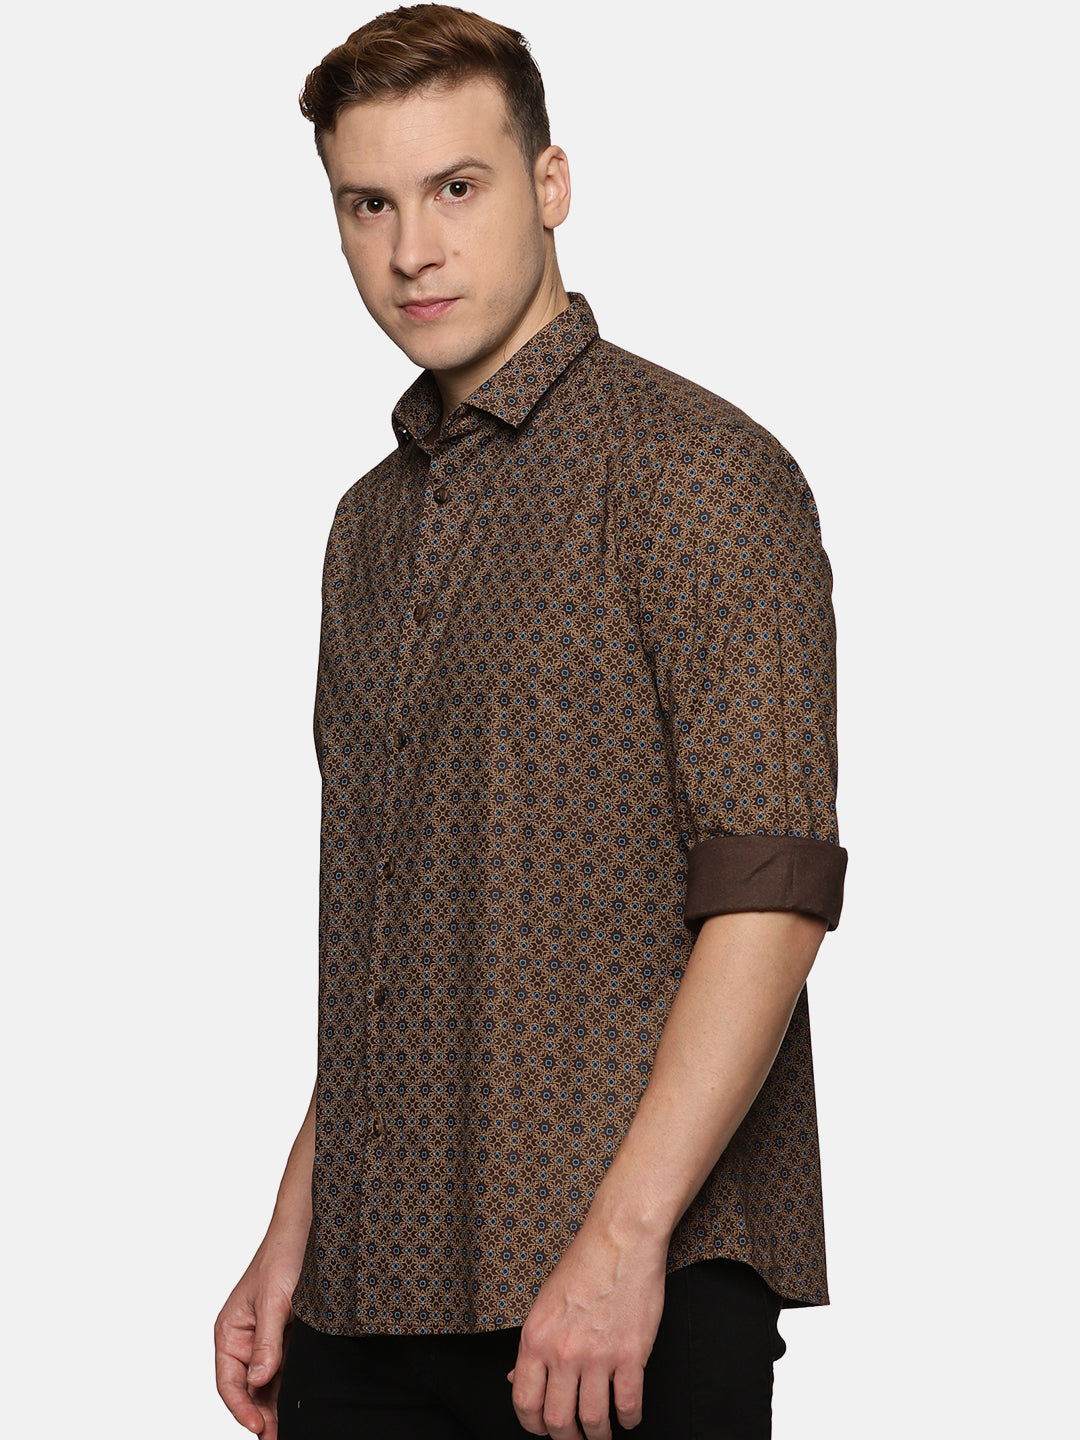 Men Brown Printed Slim Fit Casual Shirt, Men's Full Sleeve Cotton Shirt